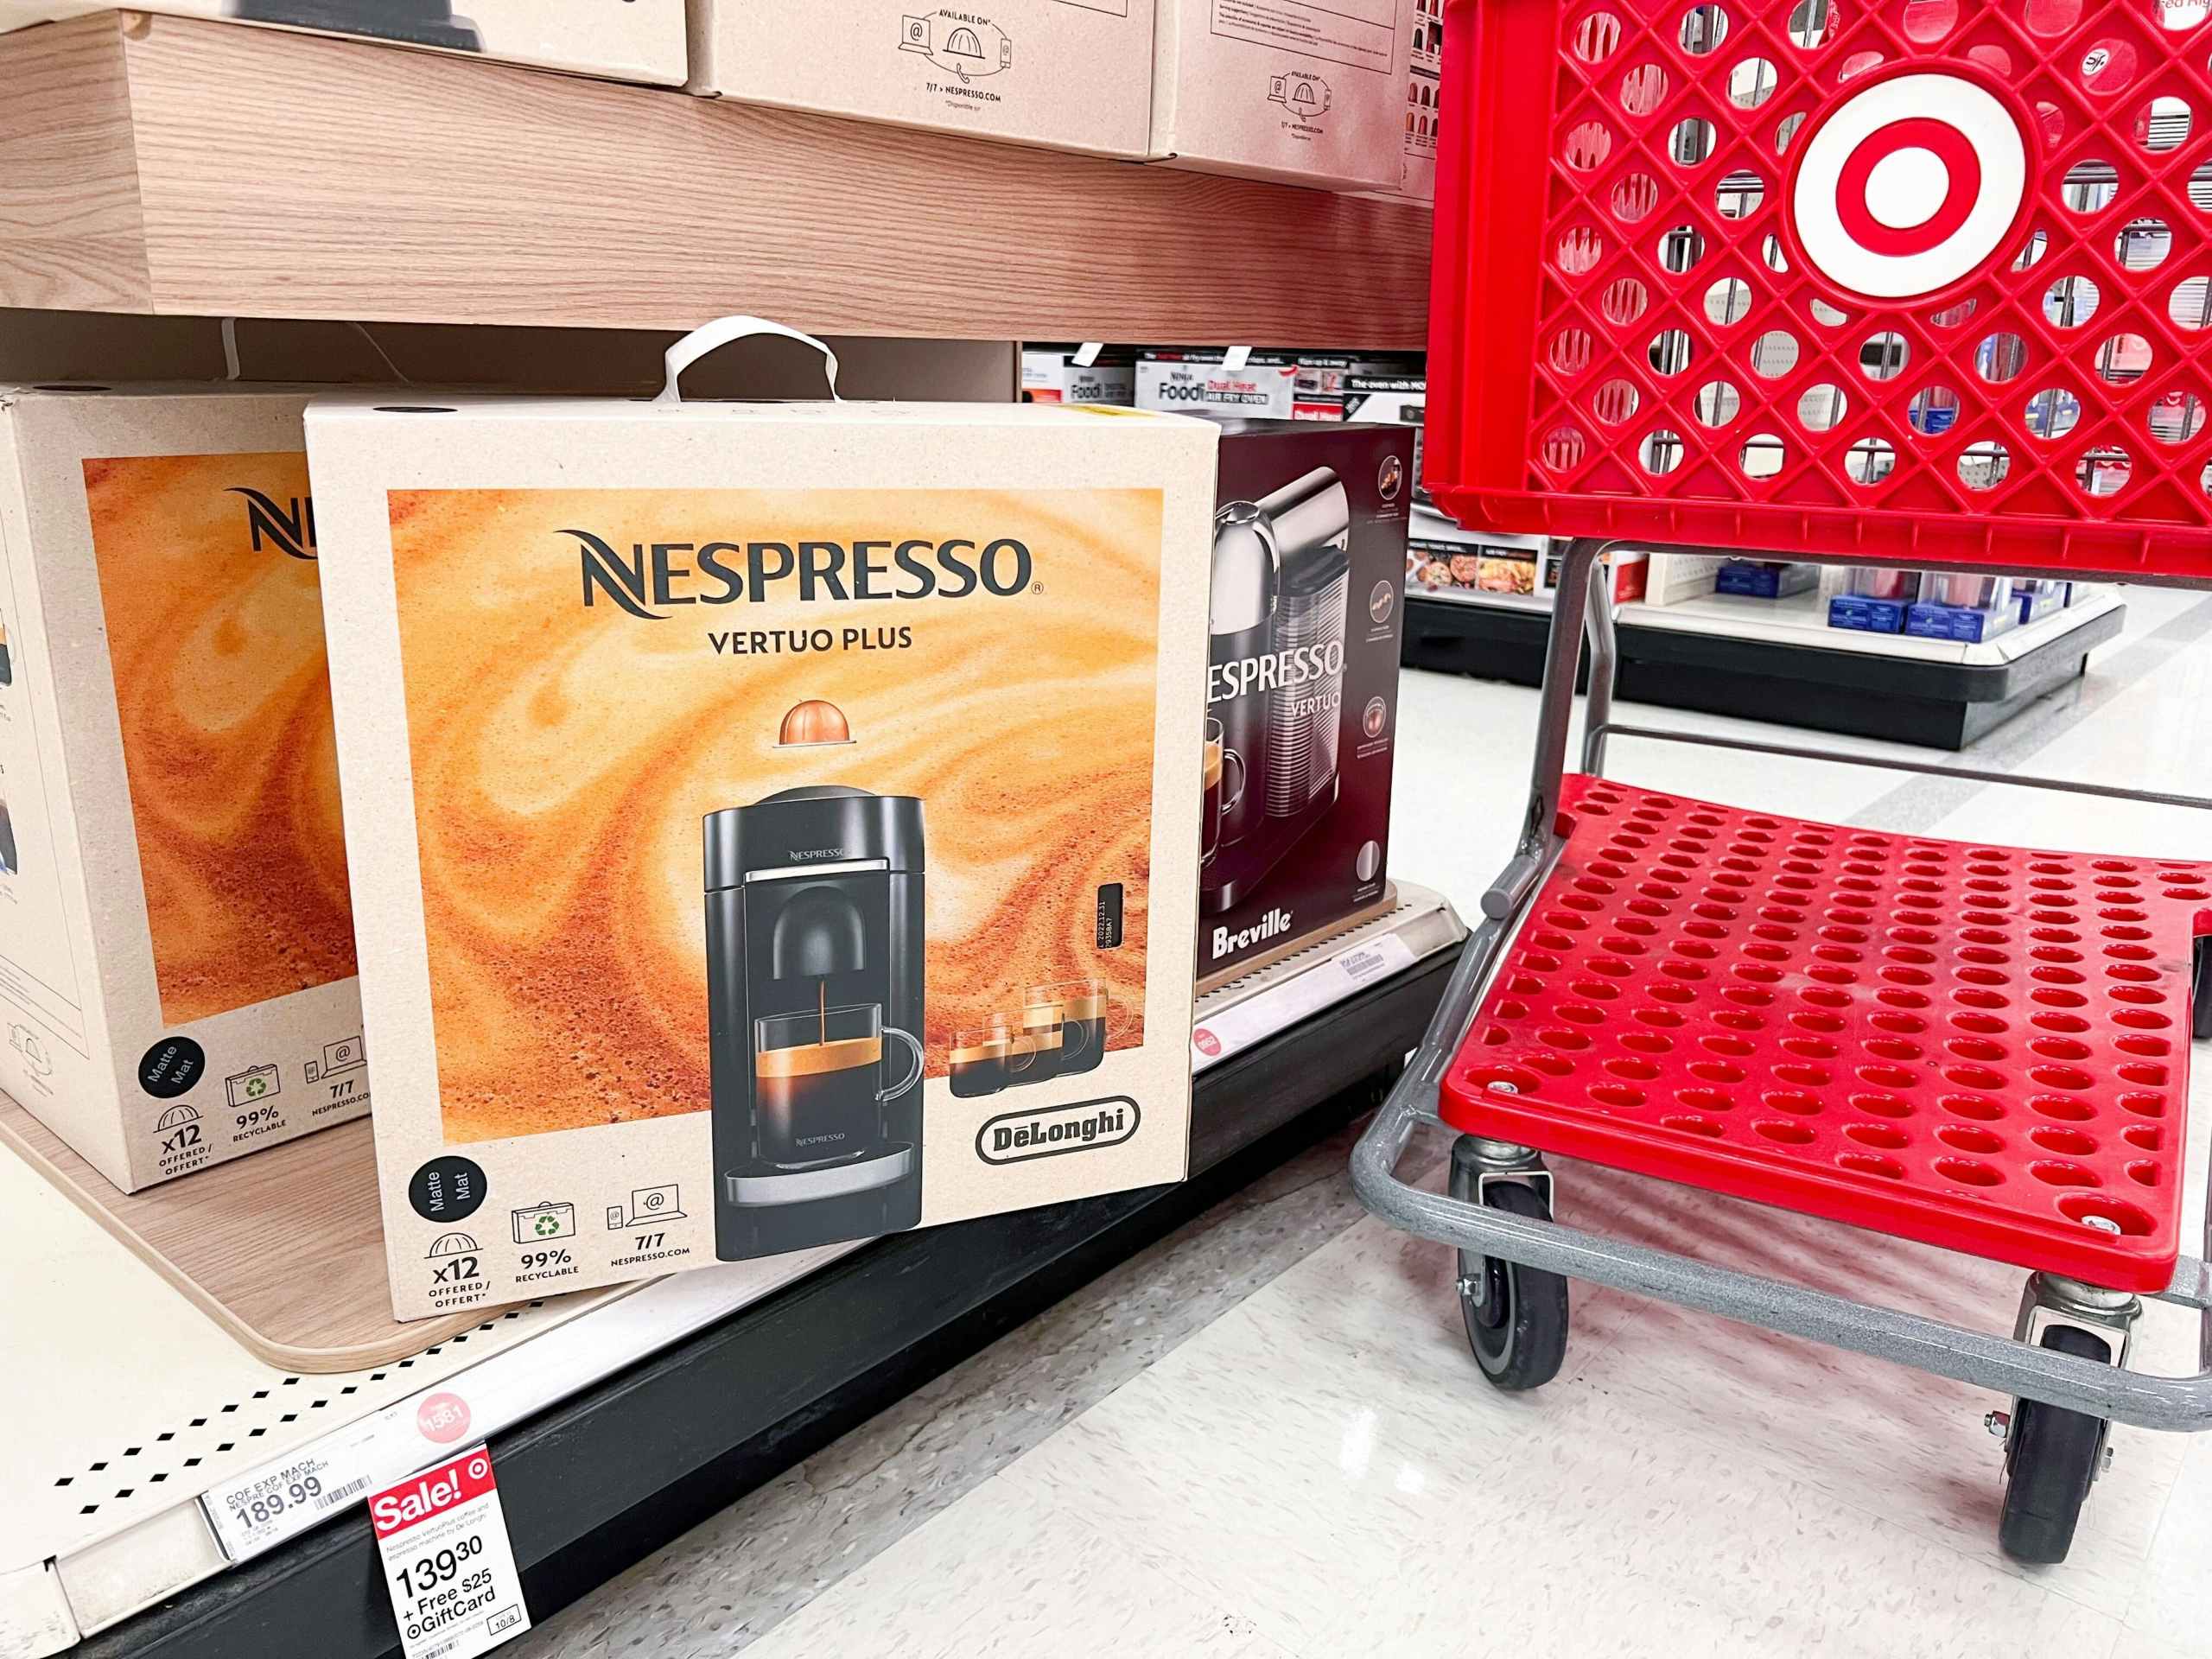 nespresso coffee machine on shelf next to target cart